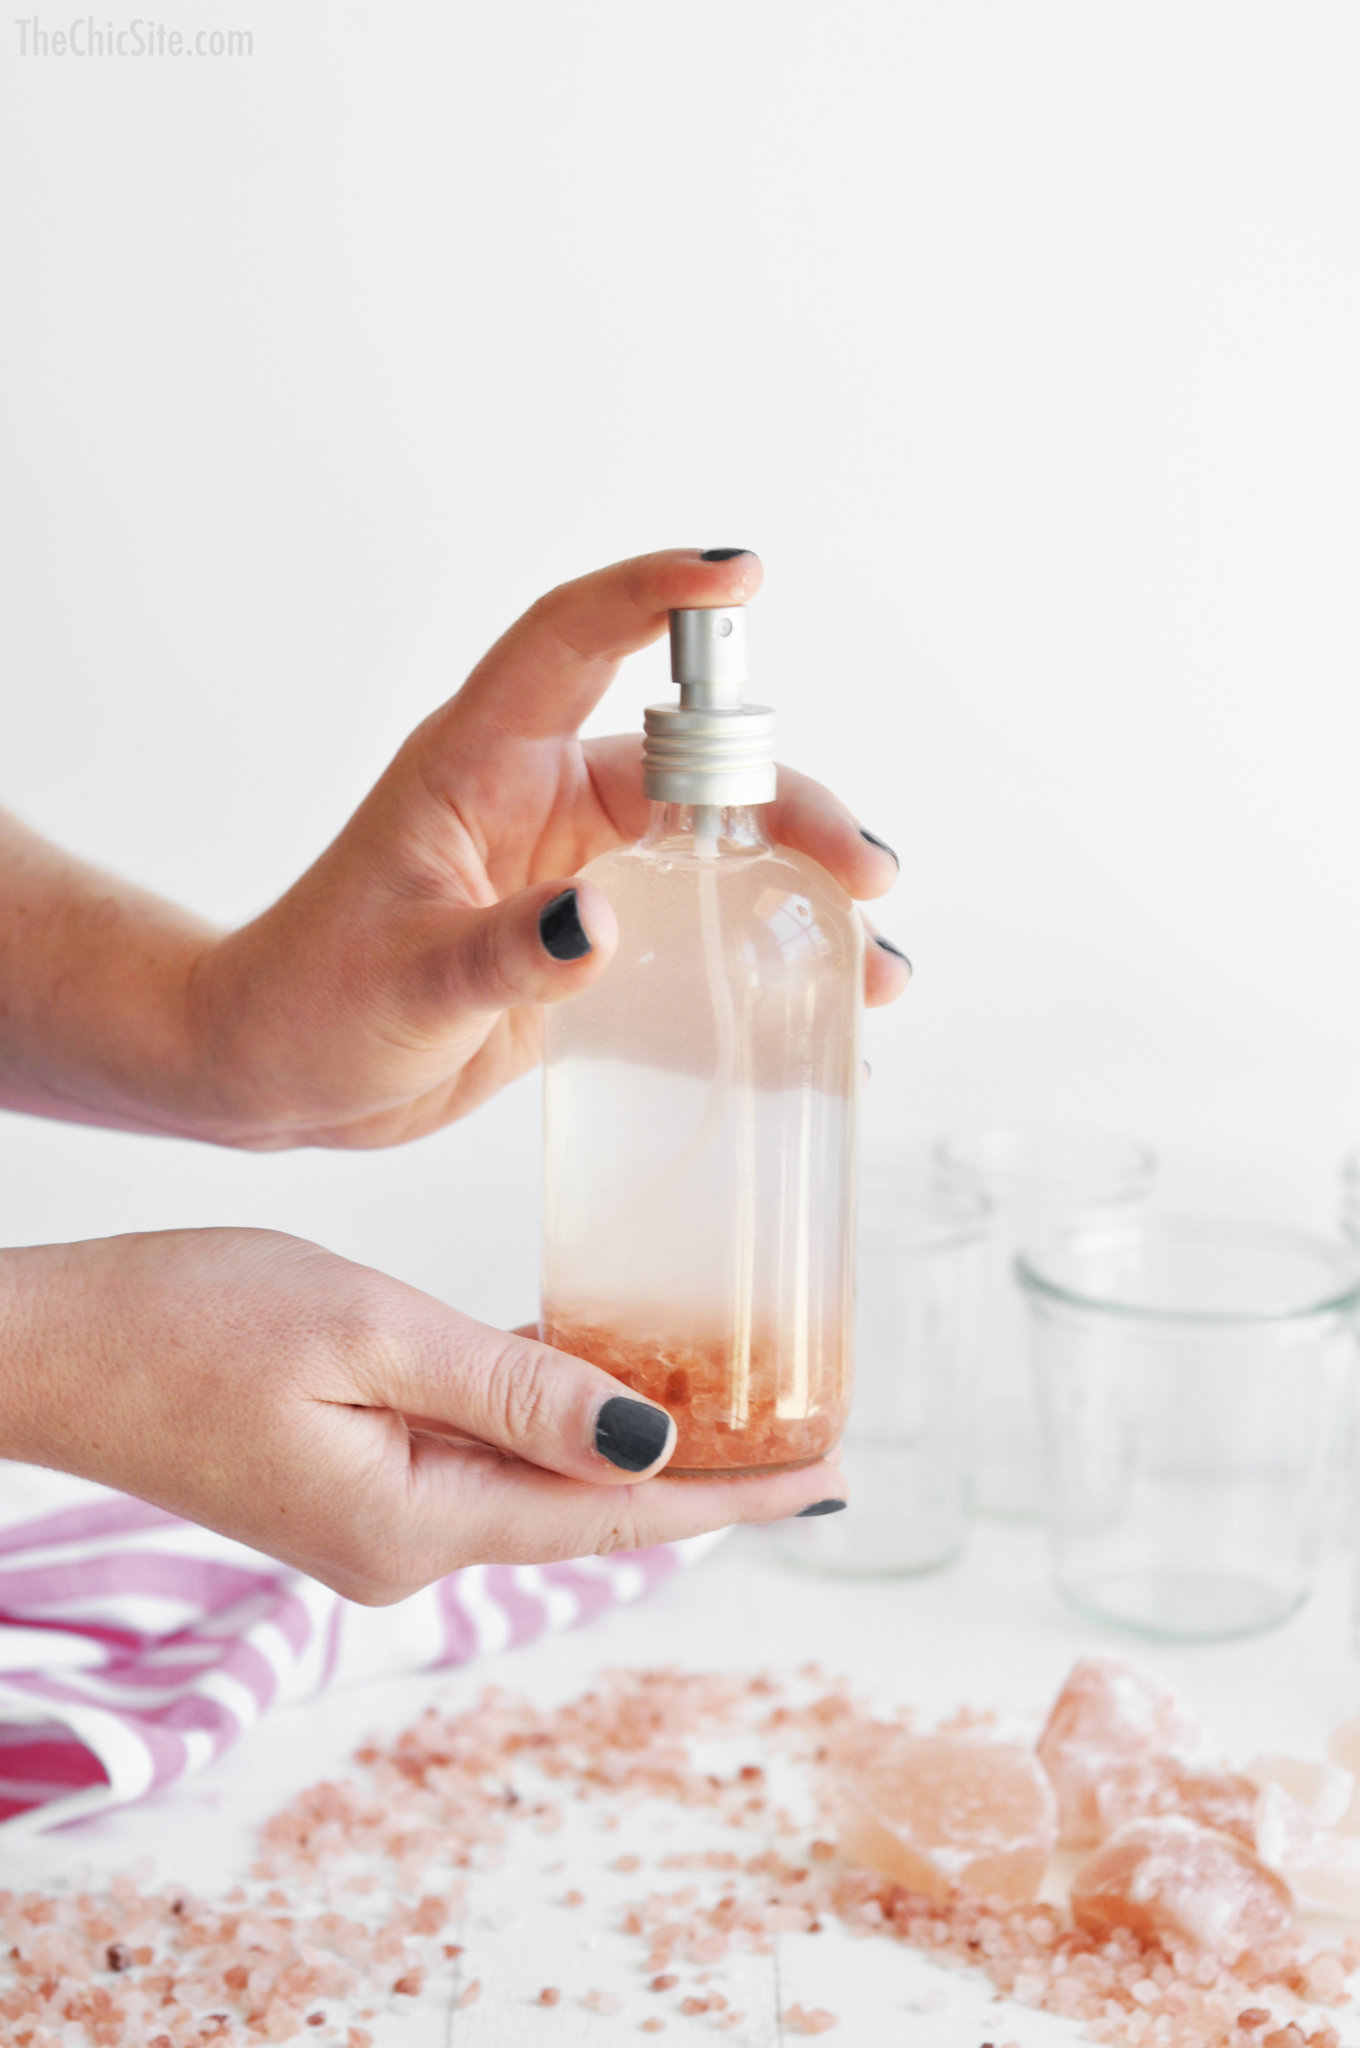 10 Ide Campuran Bahan Alami untuk Membuat Parfum, Bye-Bye Bahan Kimia